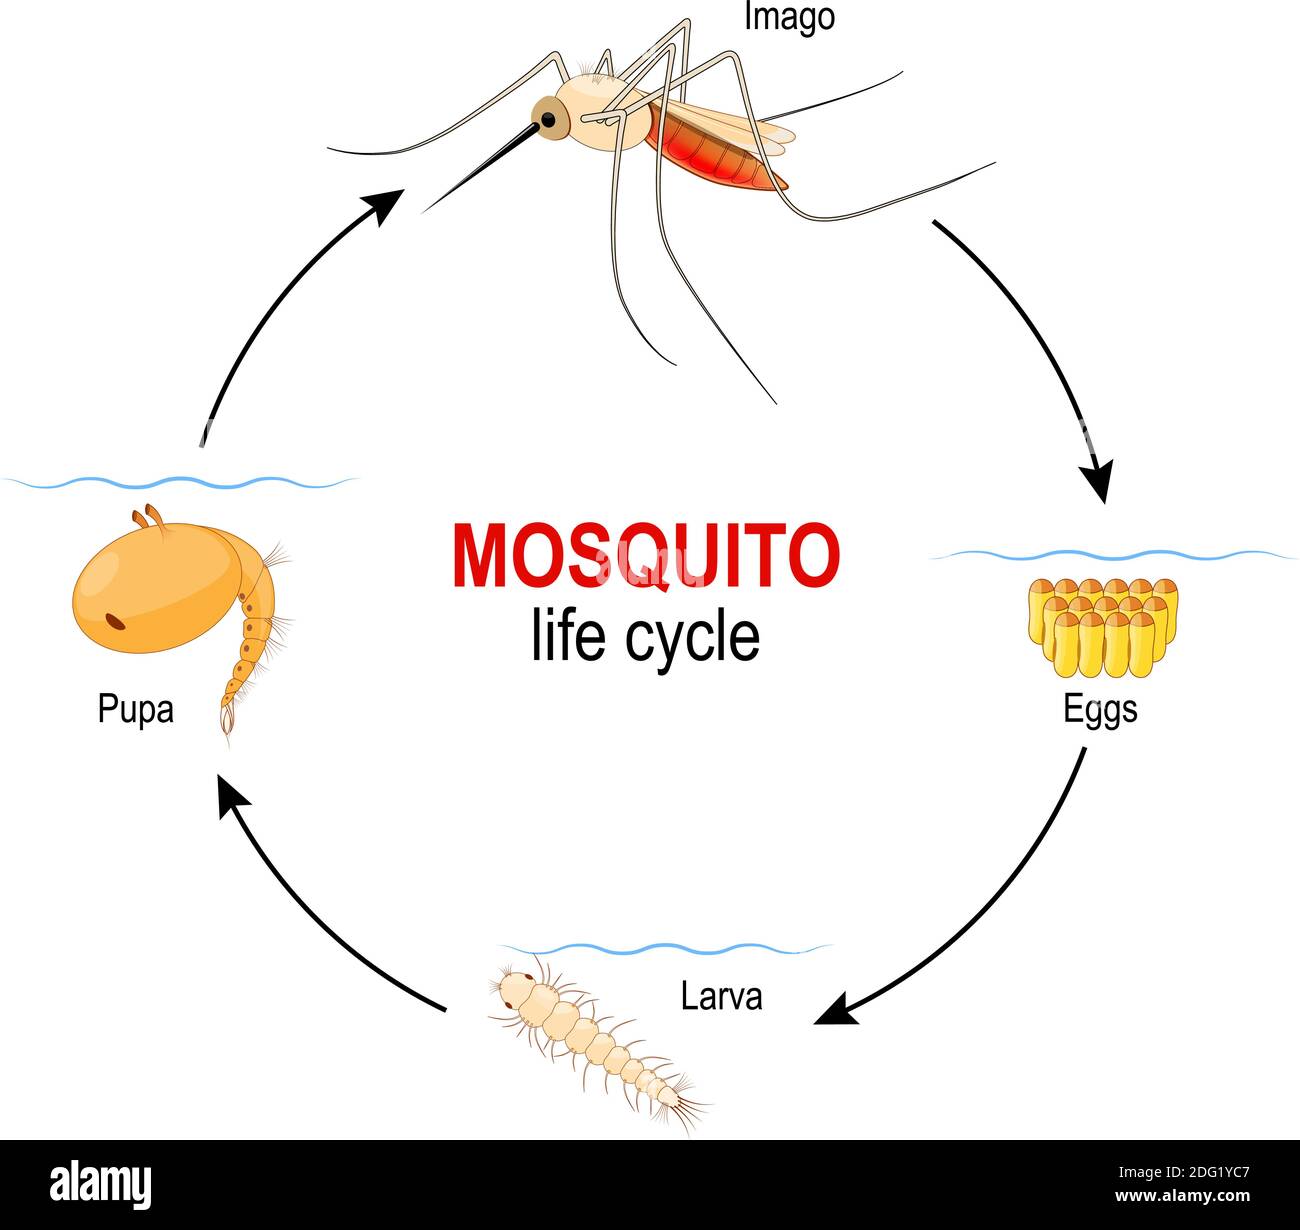 le cycle de vie des moustiques. Quatre étapes : oeuf, larve, Pupa et insecte adulte. Schéma vectoriel à usage éducatif, scientifique, biologique et médical Illustration de Vecteur